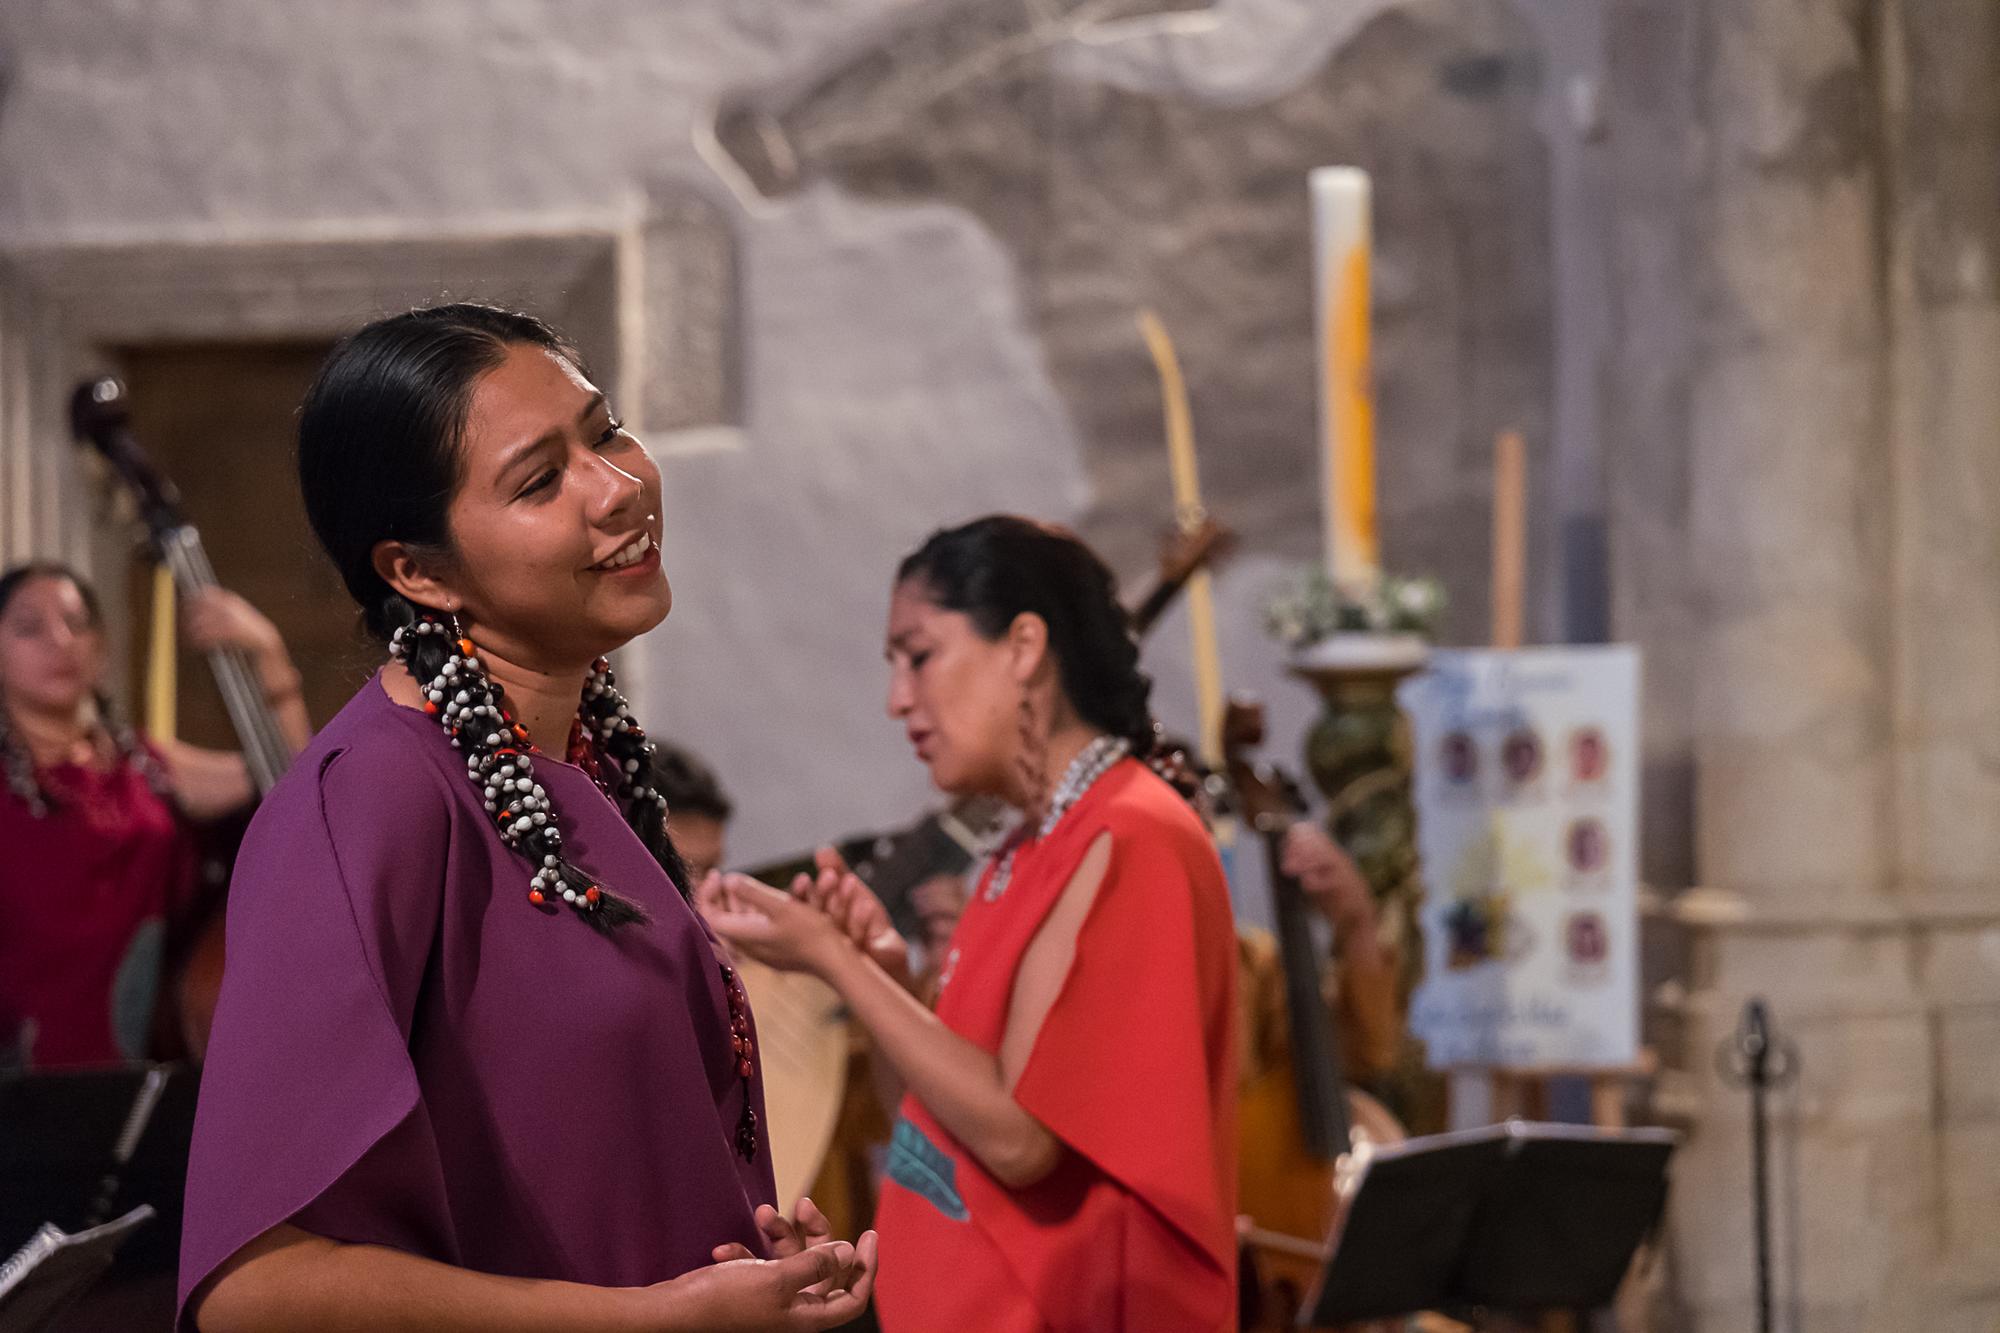 La escuela de música de San Ignacio de Moxos, en Bolivia, favorece la conservación del patrimonio cultural moxeño